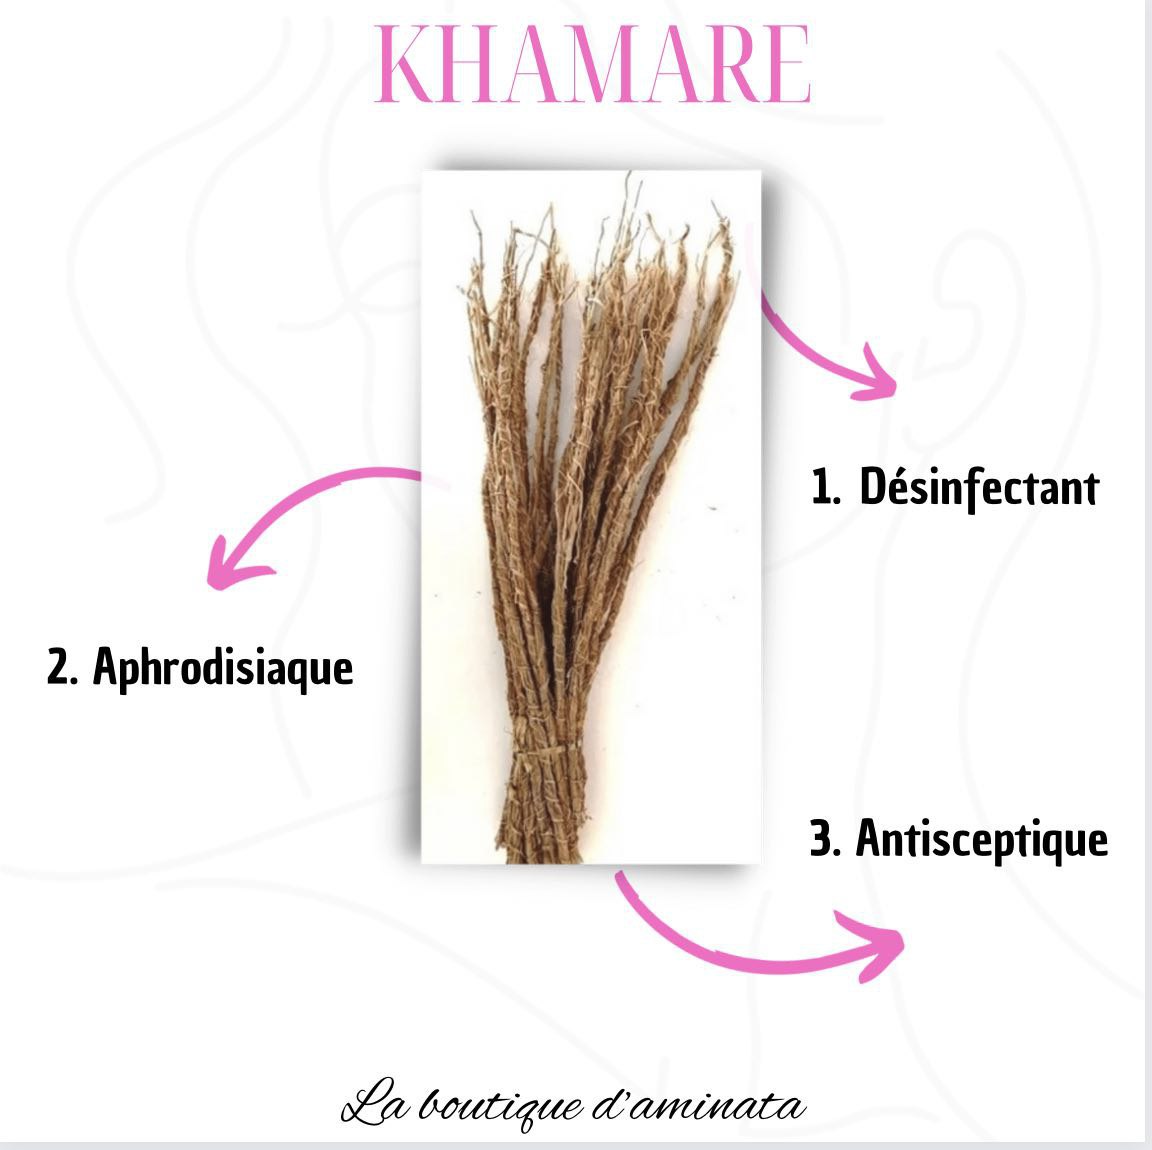 KHAMARE (Vetiver Roots Also Called Khameré Or Gongoli)